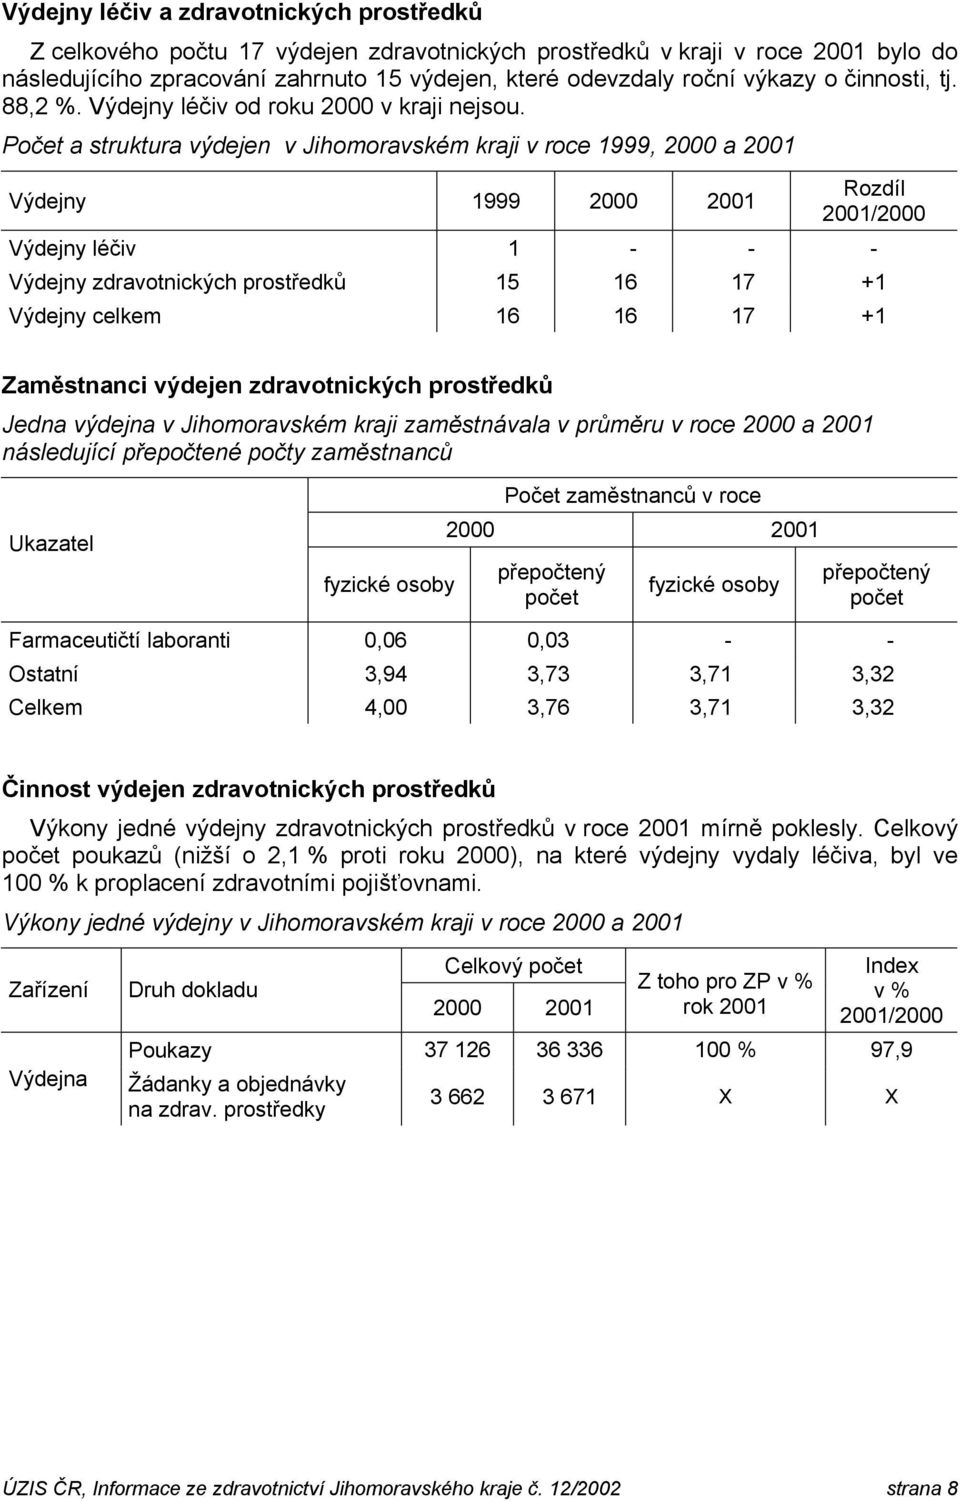 Počet a struktura výdejen v Jihomoravském kraji v roce 1999, 2000 a 2001 Výdejny 1999 Rozdíl Výdejny léčiv 1 - - - Výdejny zdravotnických prostředků 15 16 17 +1 Výdejny celkem 16 16 17 +1 Zaměstnanci